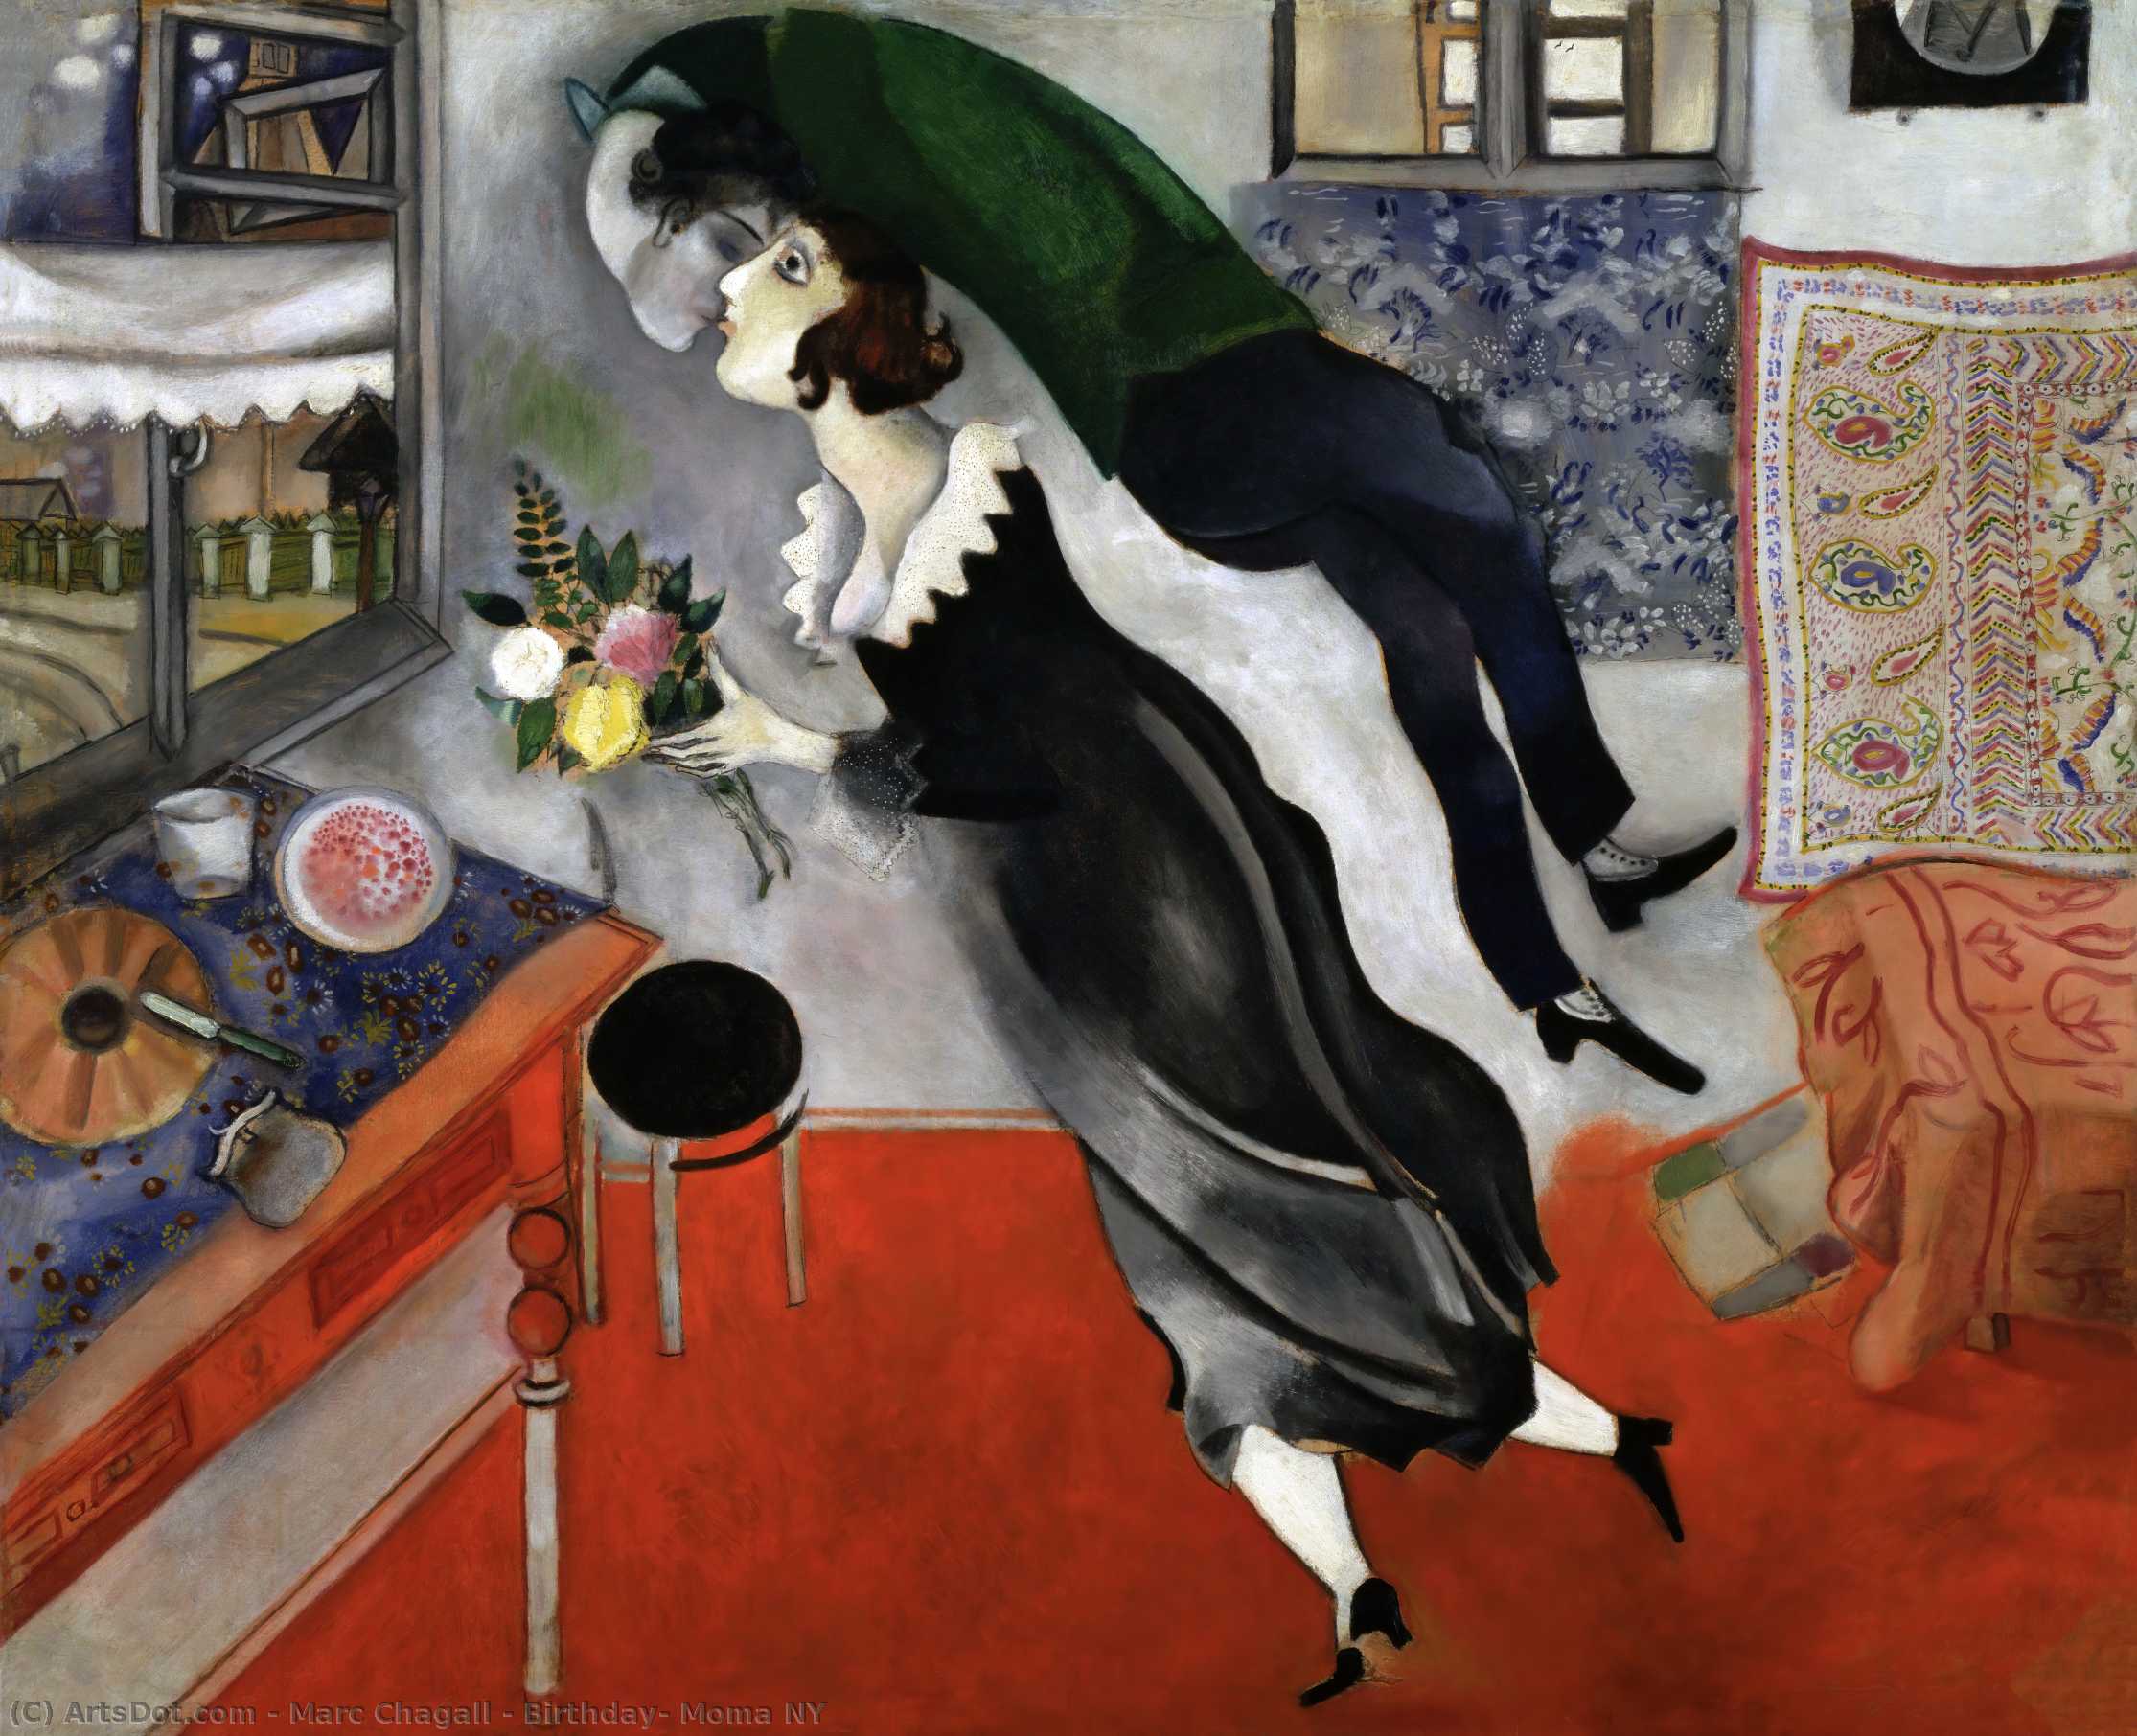 WikiOO.org - Encyclopedia of Fine Arts - Maalaus, taideteos Marc Chagall - Birthday, Moma NY